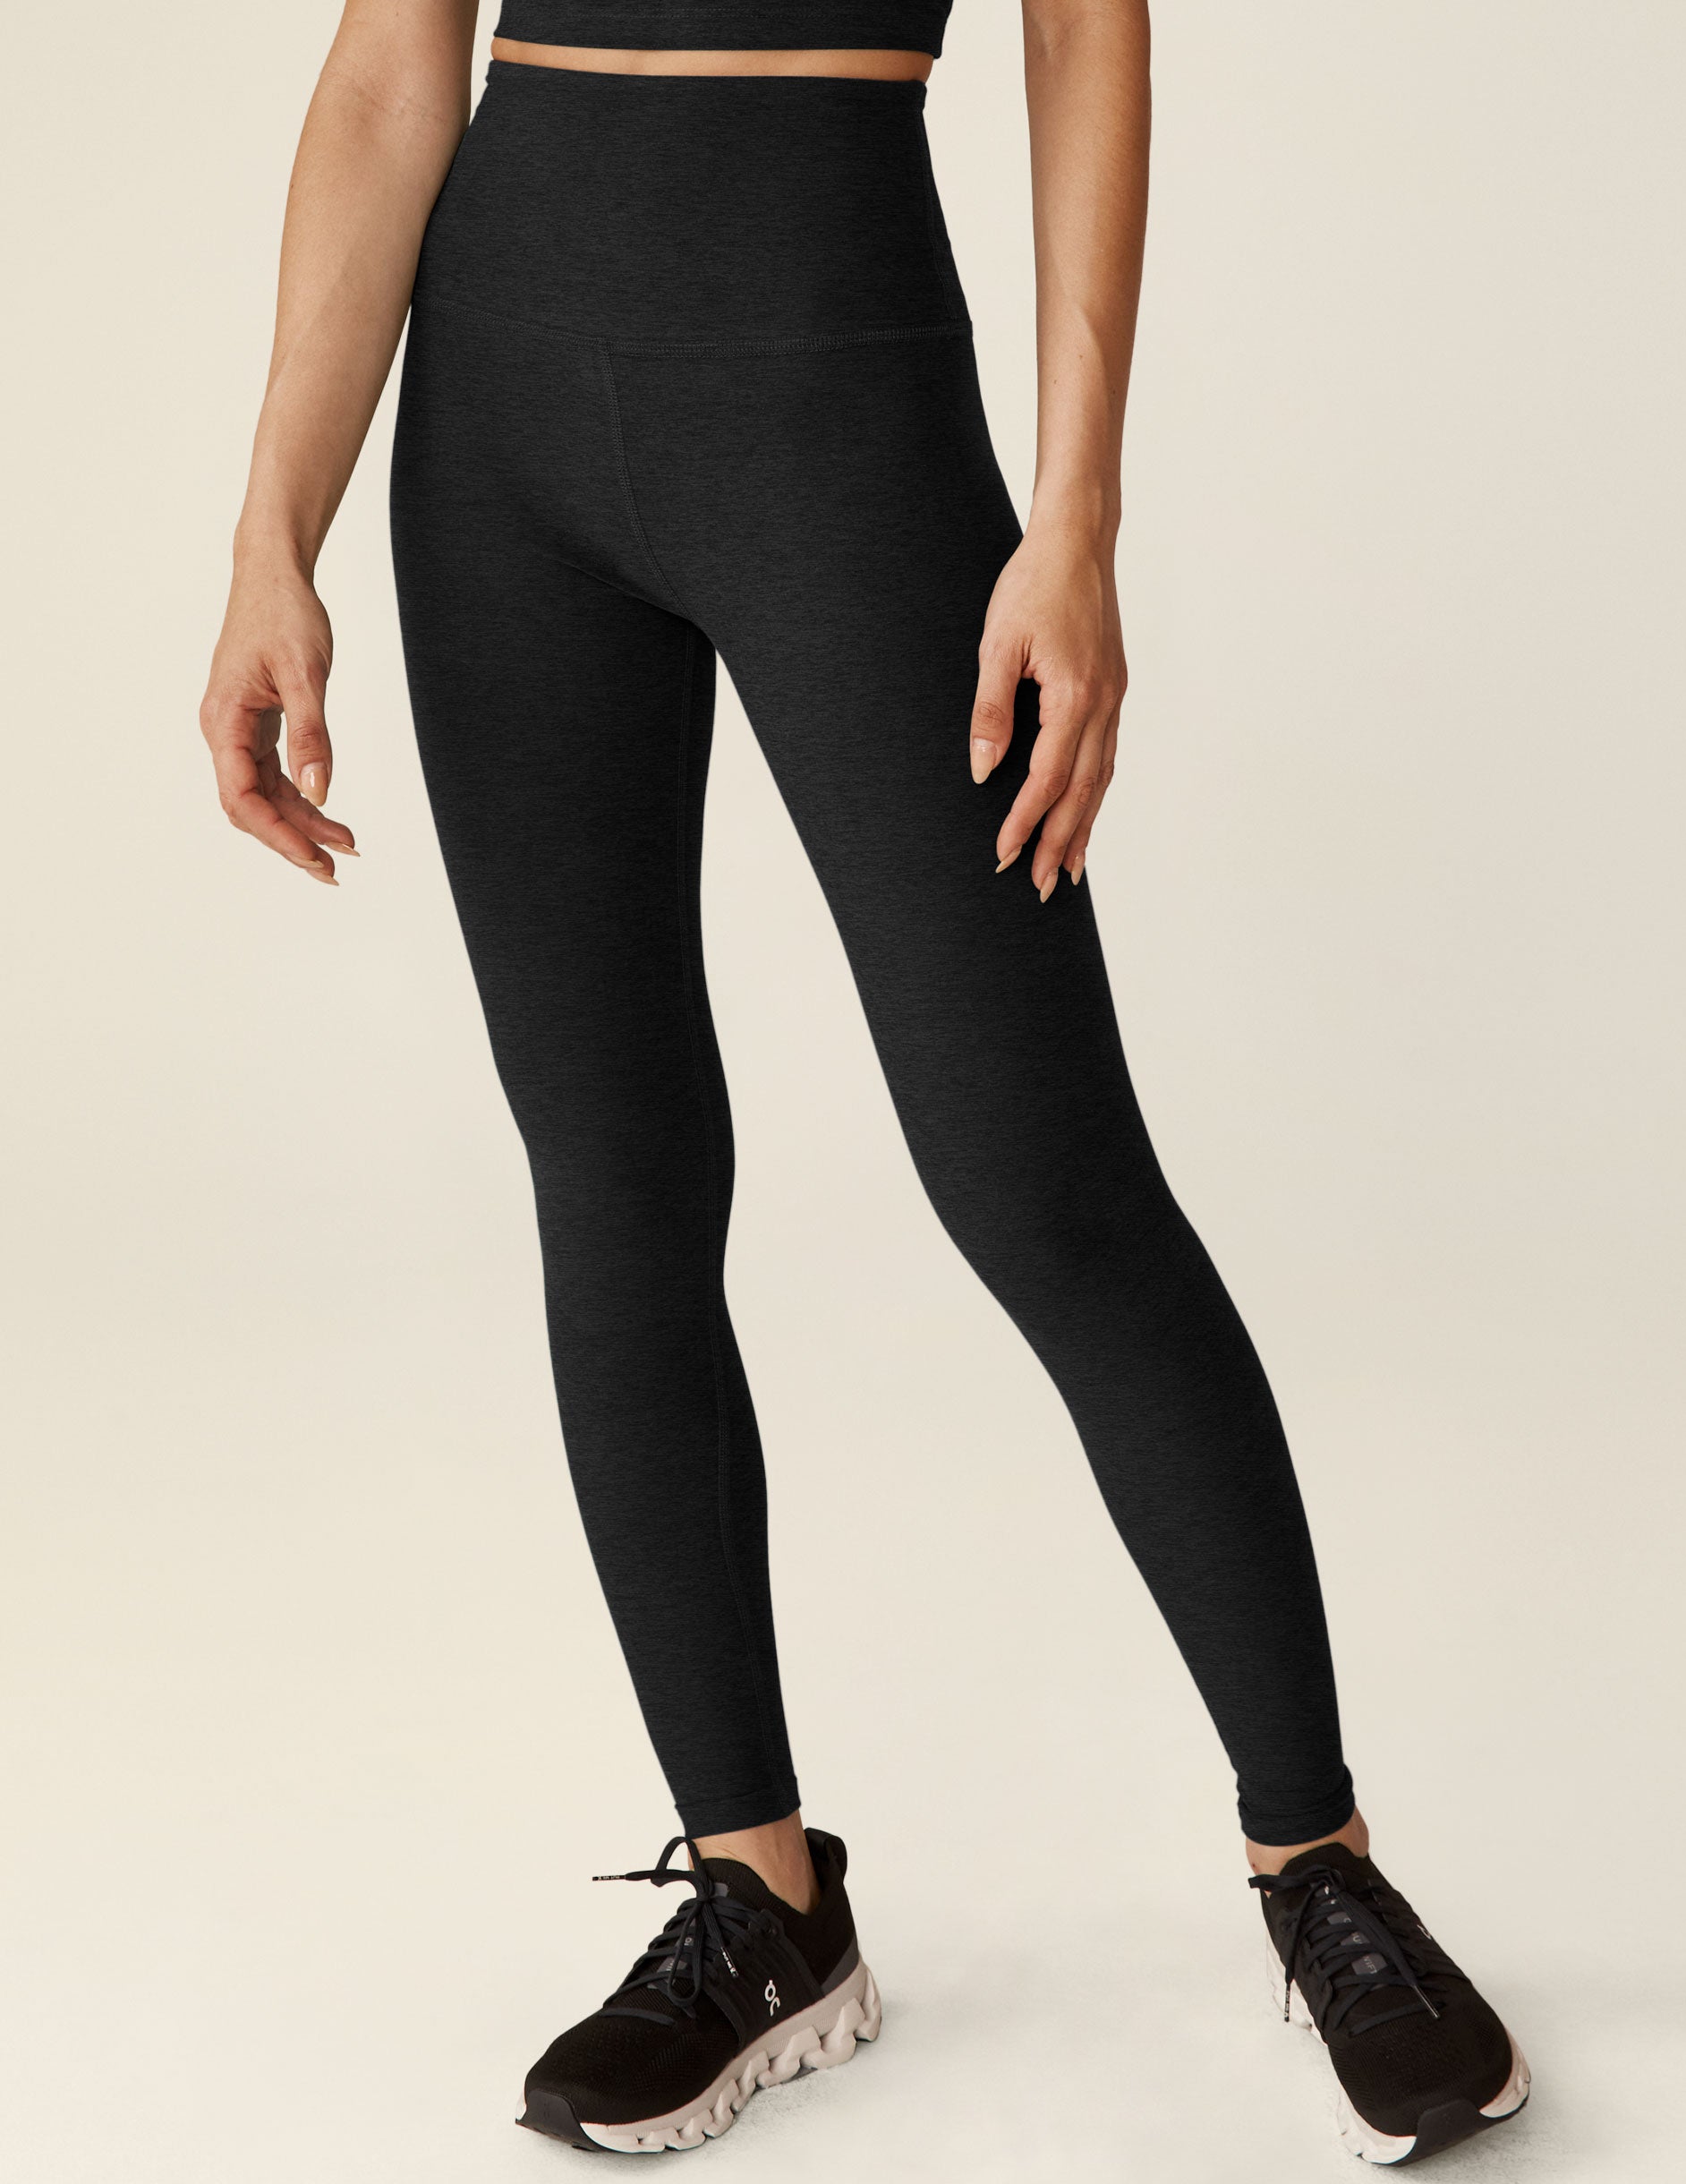 black long high-waisted leggings.